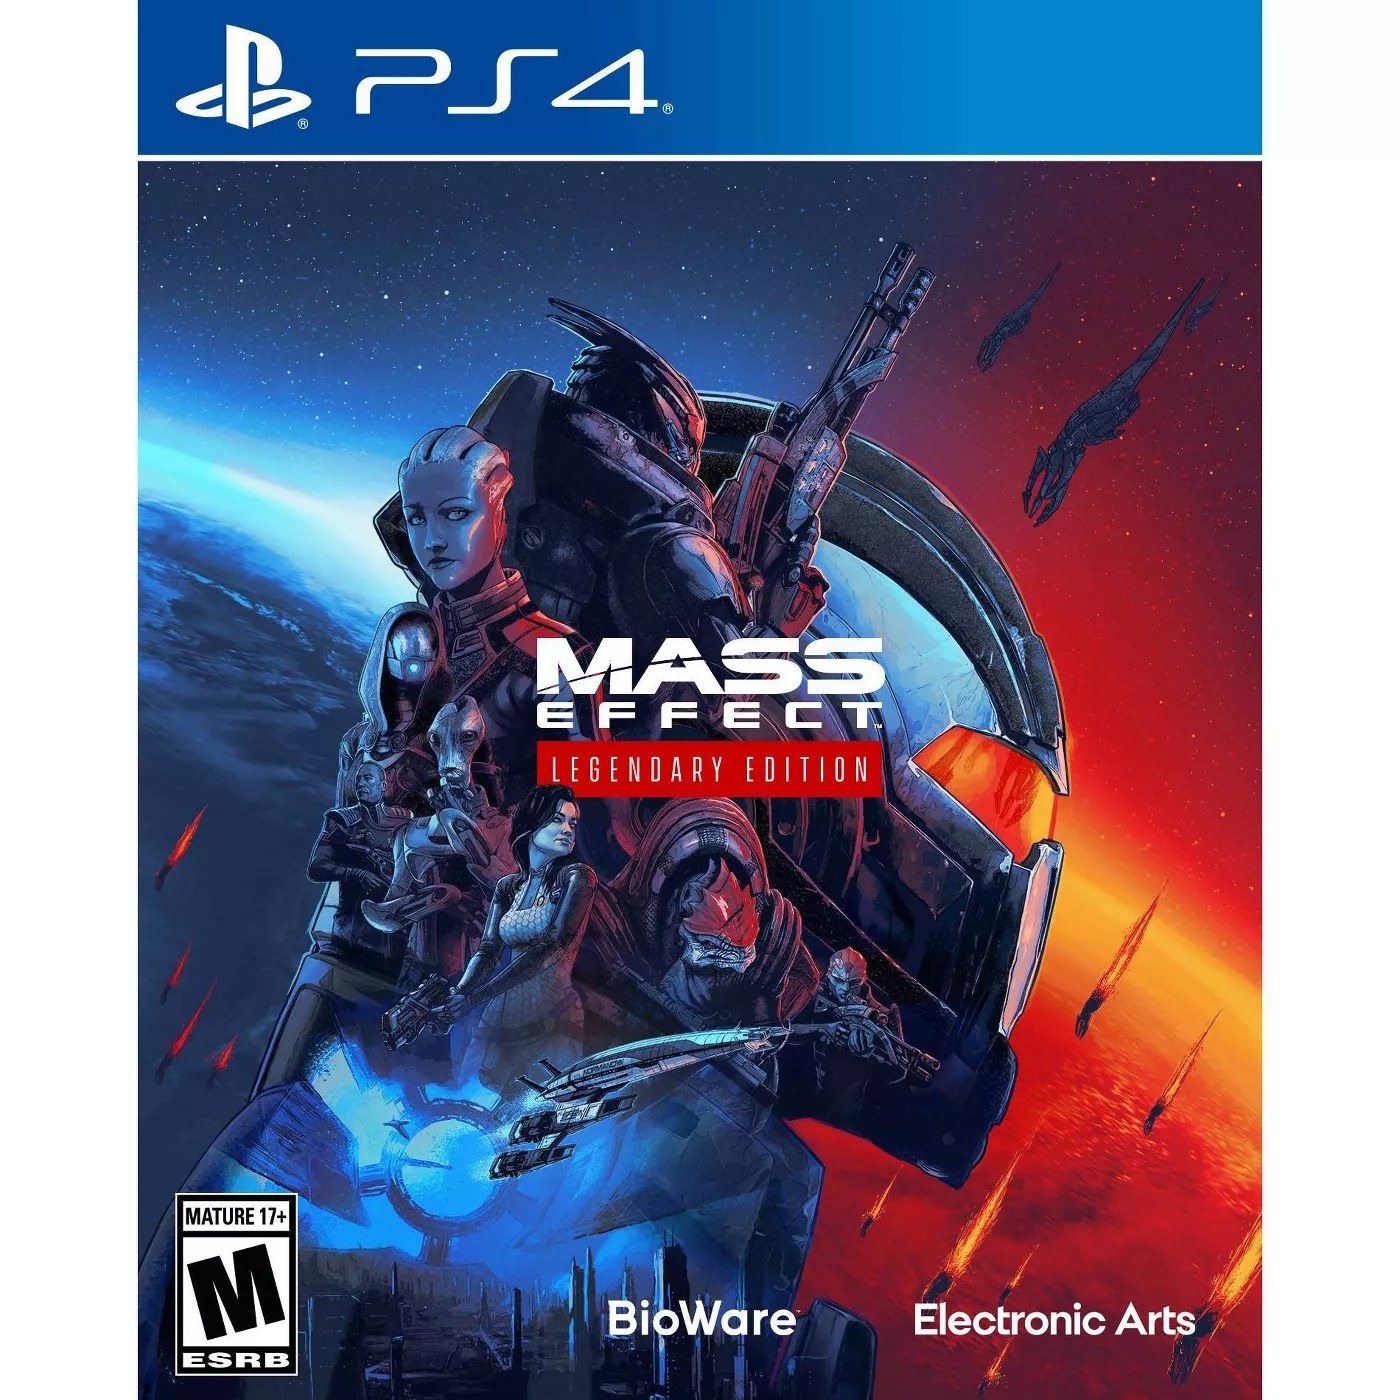 The Mass Effect Legendary Edition